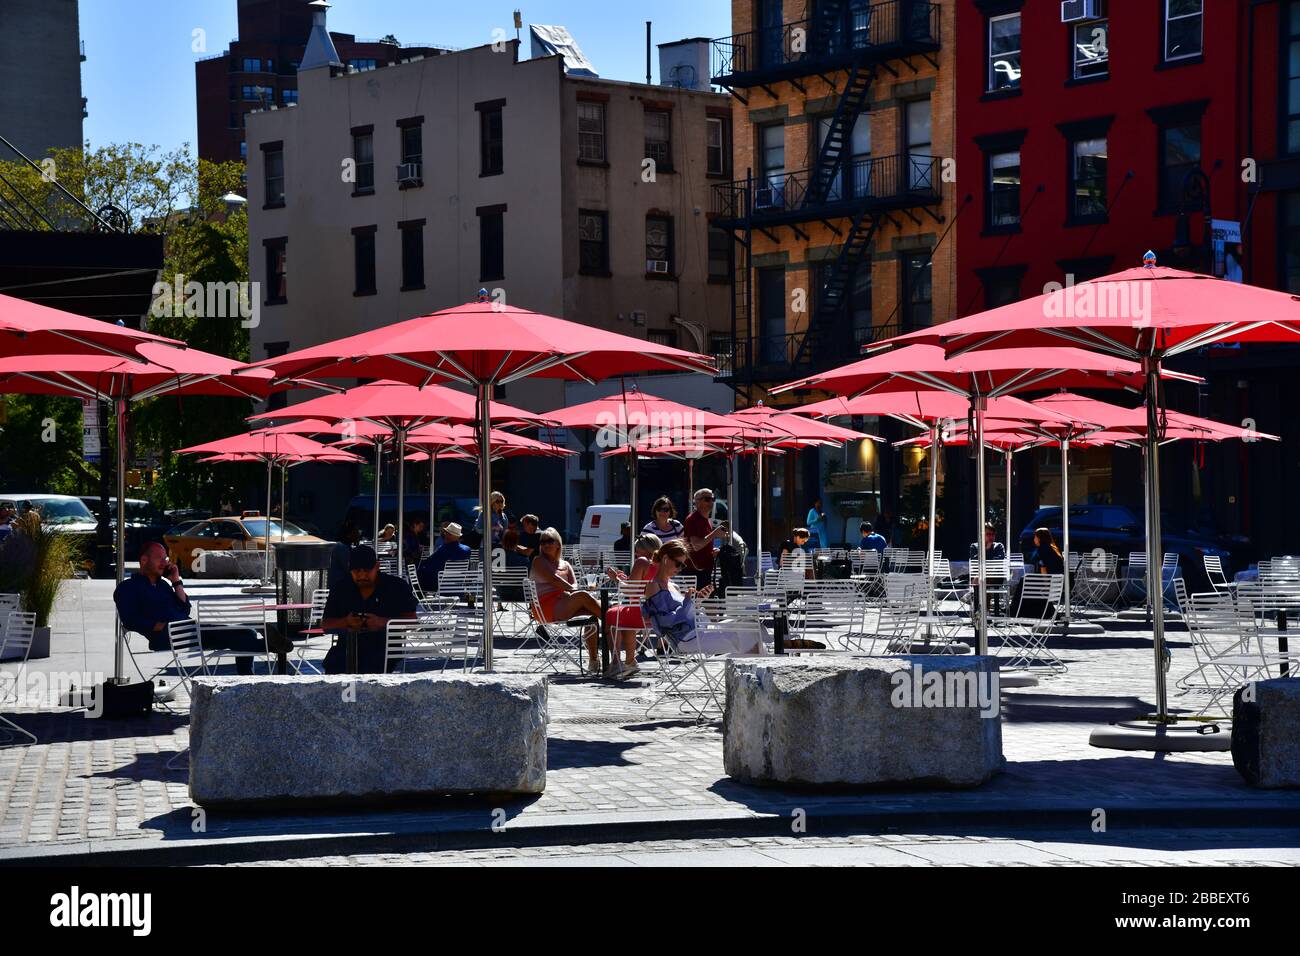 New York, USA: Blick auf den Platz mit roten Sonnenschirmen an der Kreuzung von 9th Av und 14th Street; Menschen in der Sonne entspannen Stockfoto